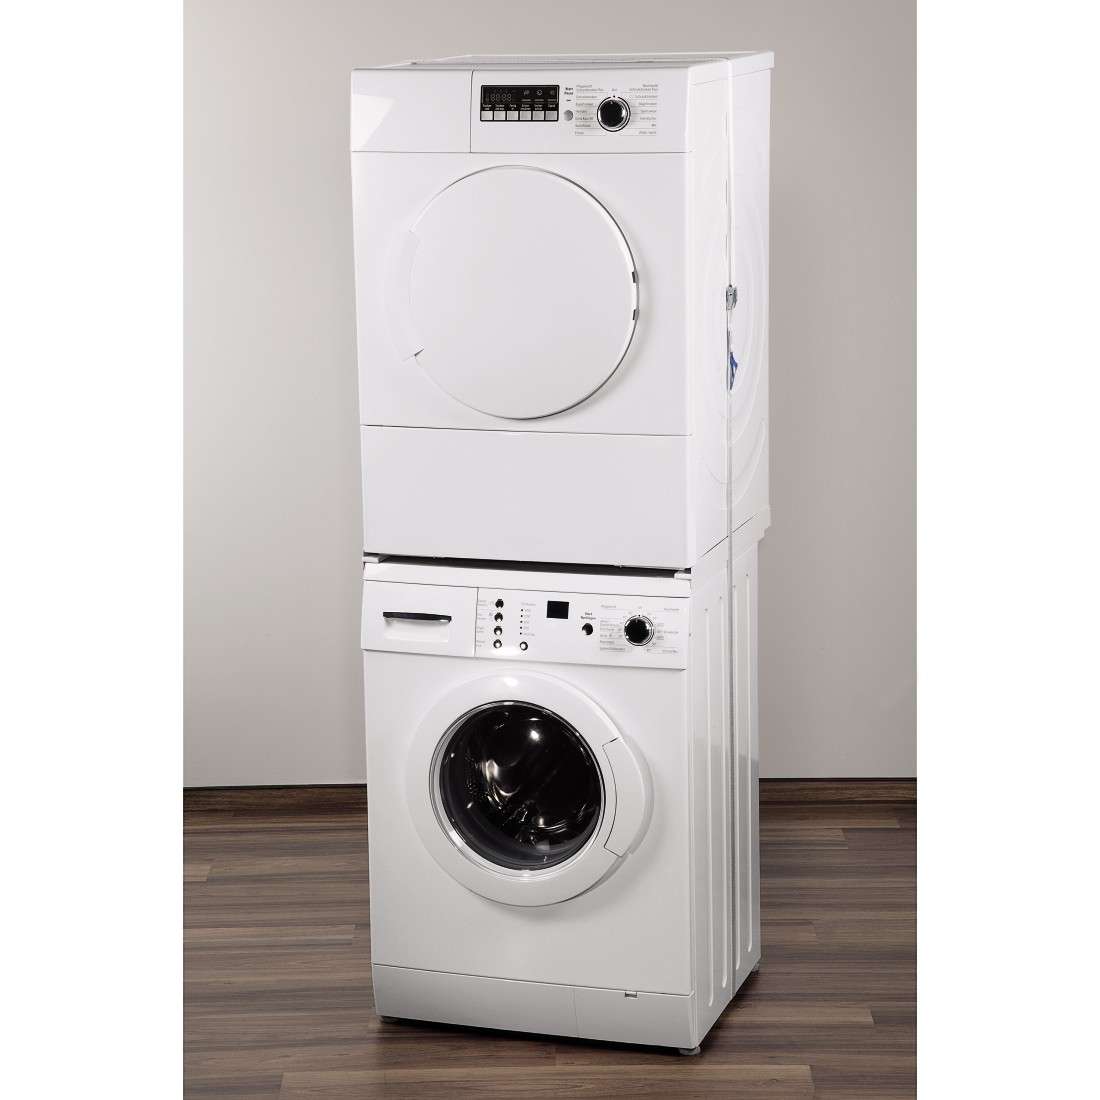 Zwischenbaurahmen (offene Front) für Waschmaschine und Trockner, 55 - 66 cm